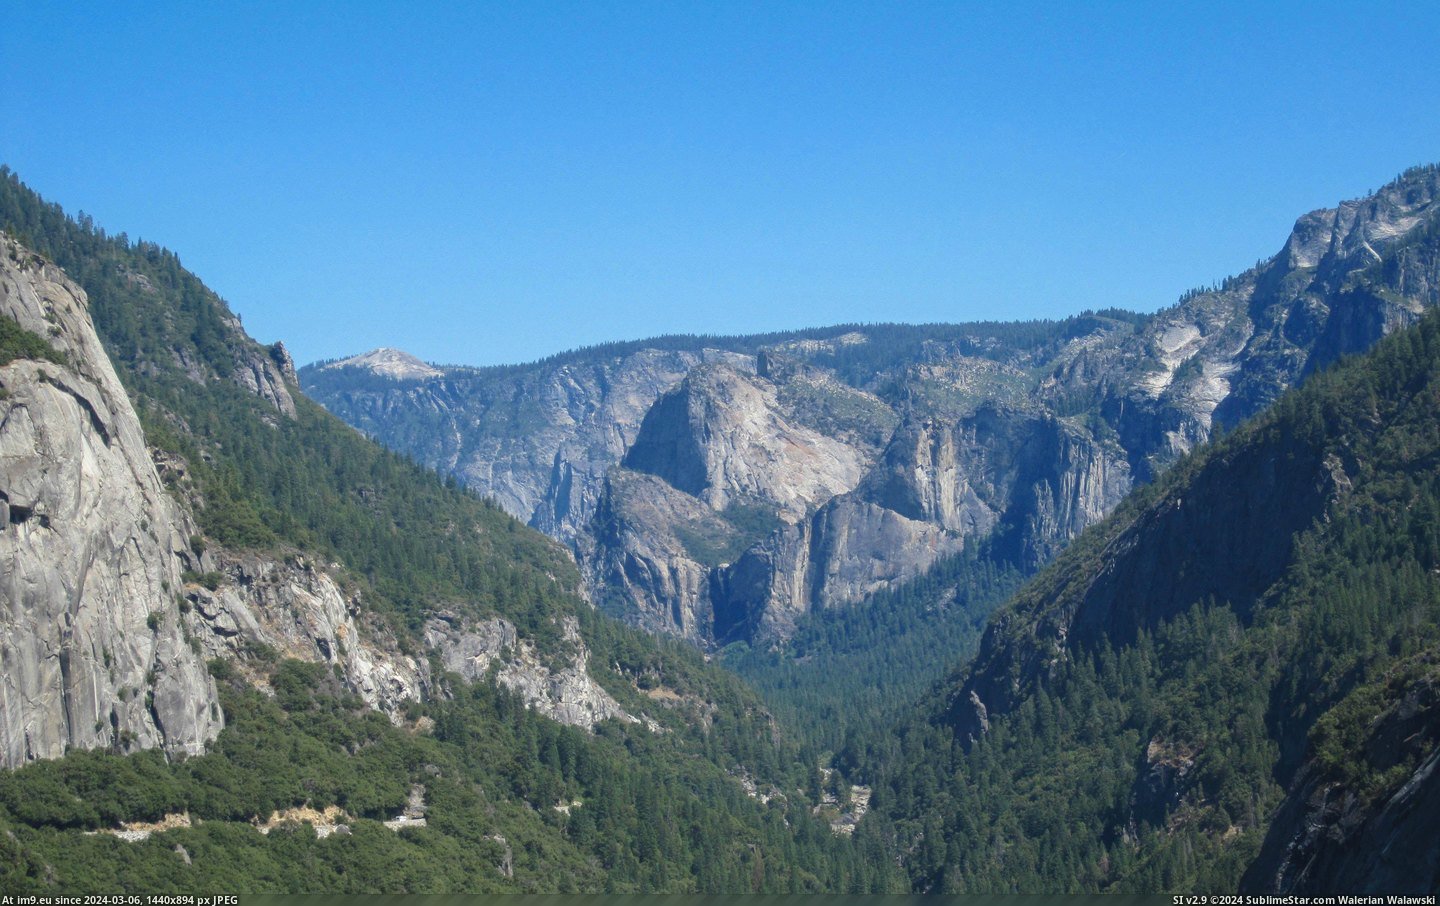  #Yosemite  [Earthporn] Yosemite, CA [4000x2495] Pic. (Obraz z album My r/EARTHPORN favs))